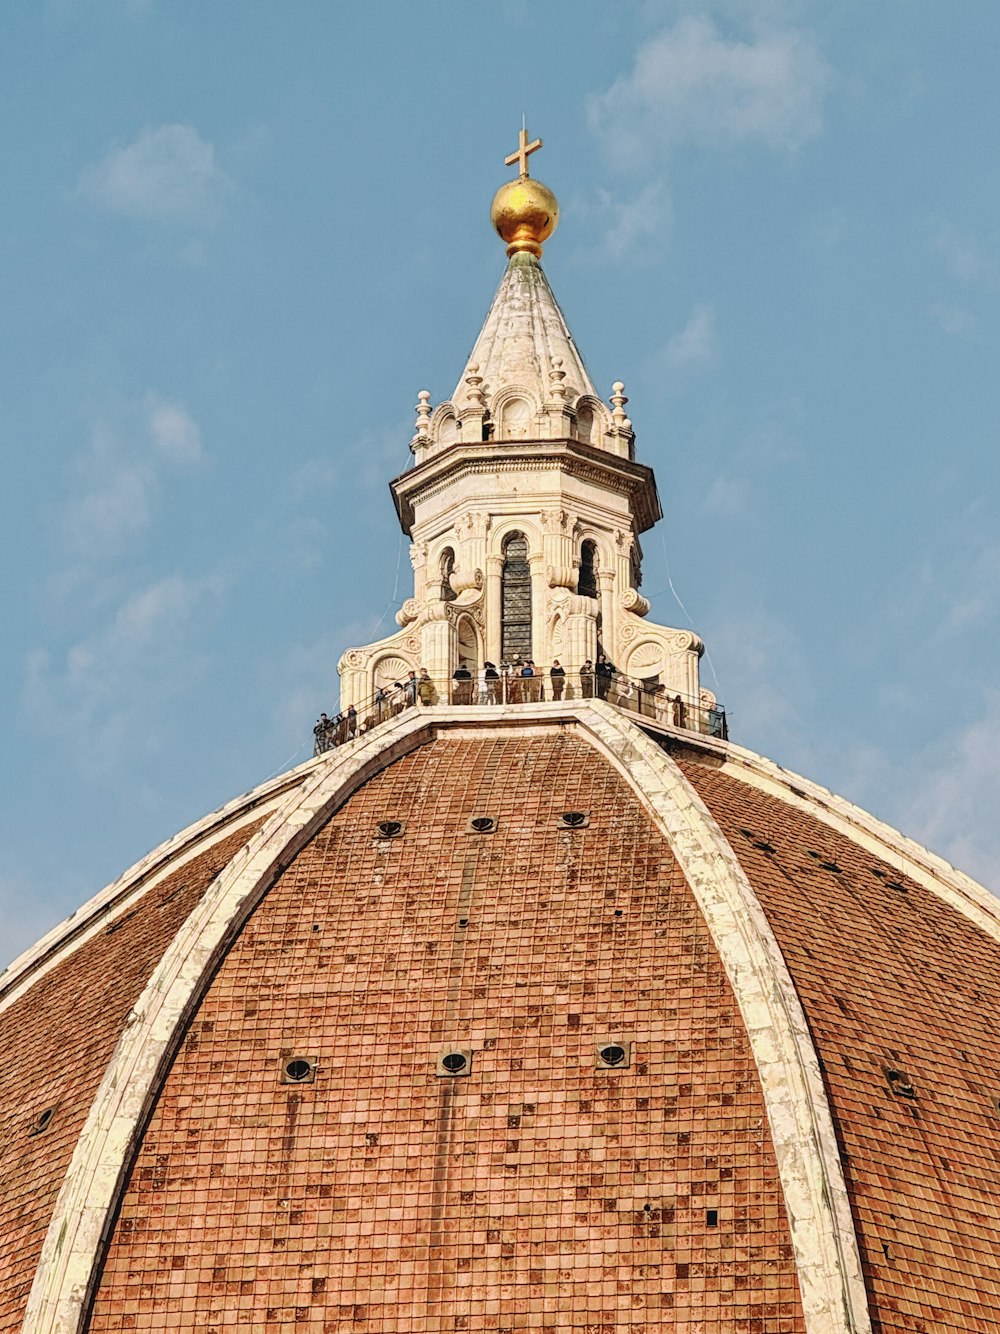 die Spitze eines Backsteingebäudes mit goldener Kuppel